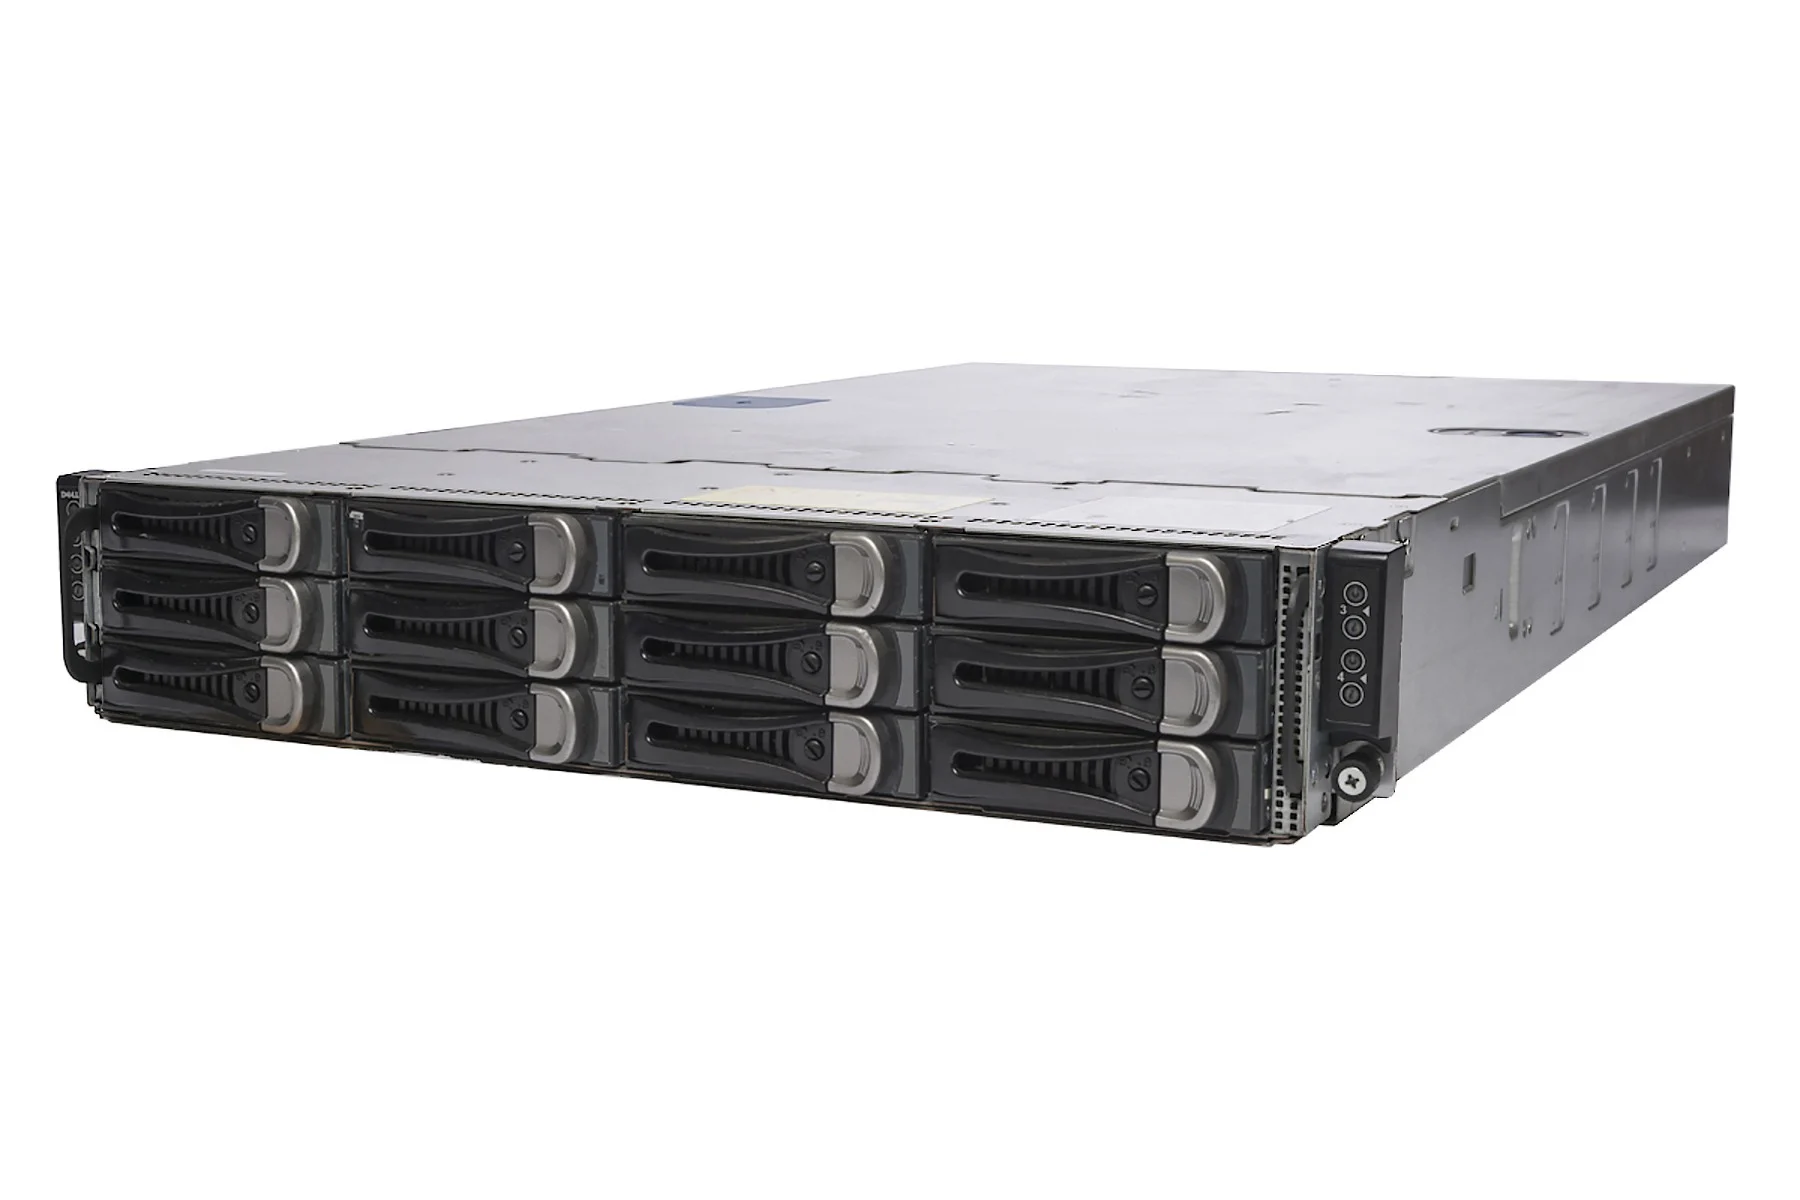 DELL PowerEdge C6100 Rack Server